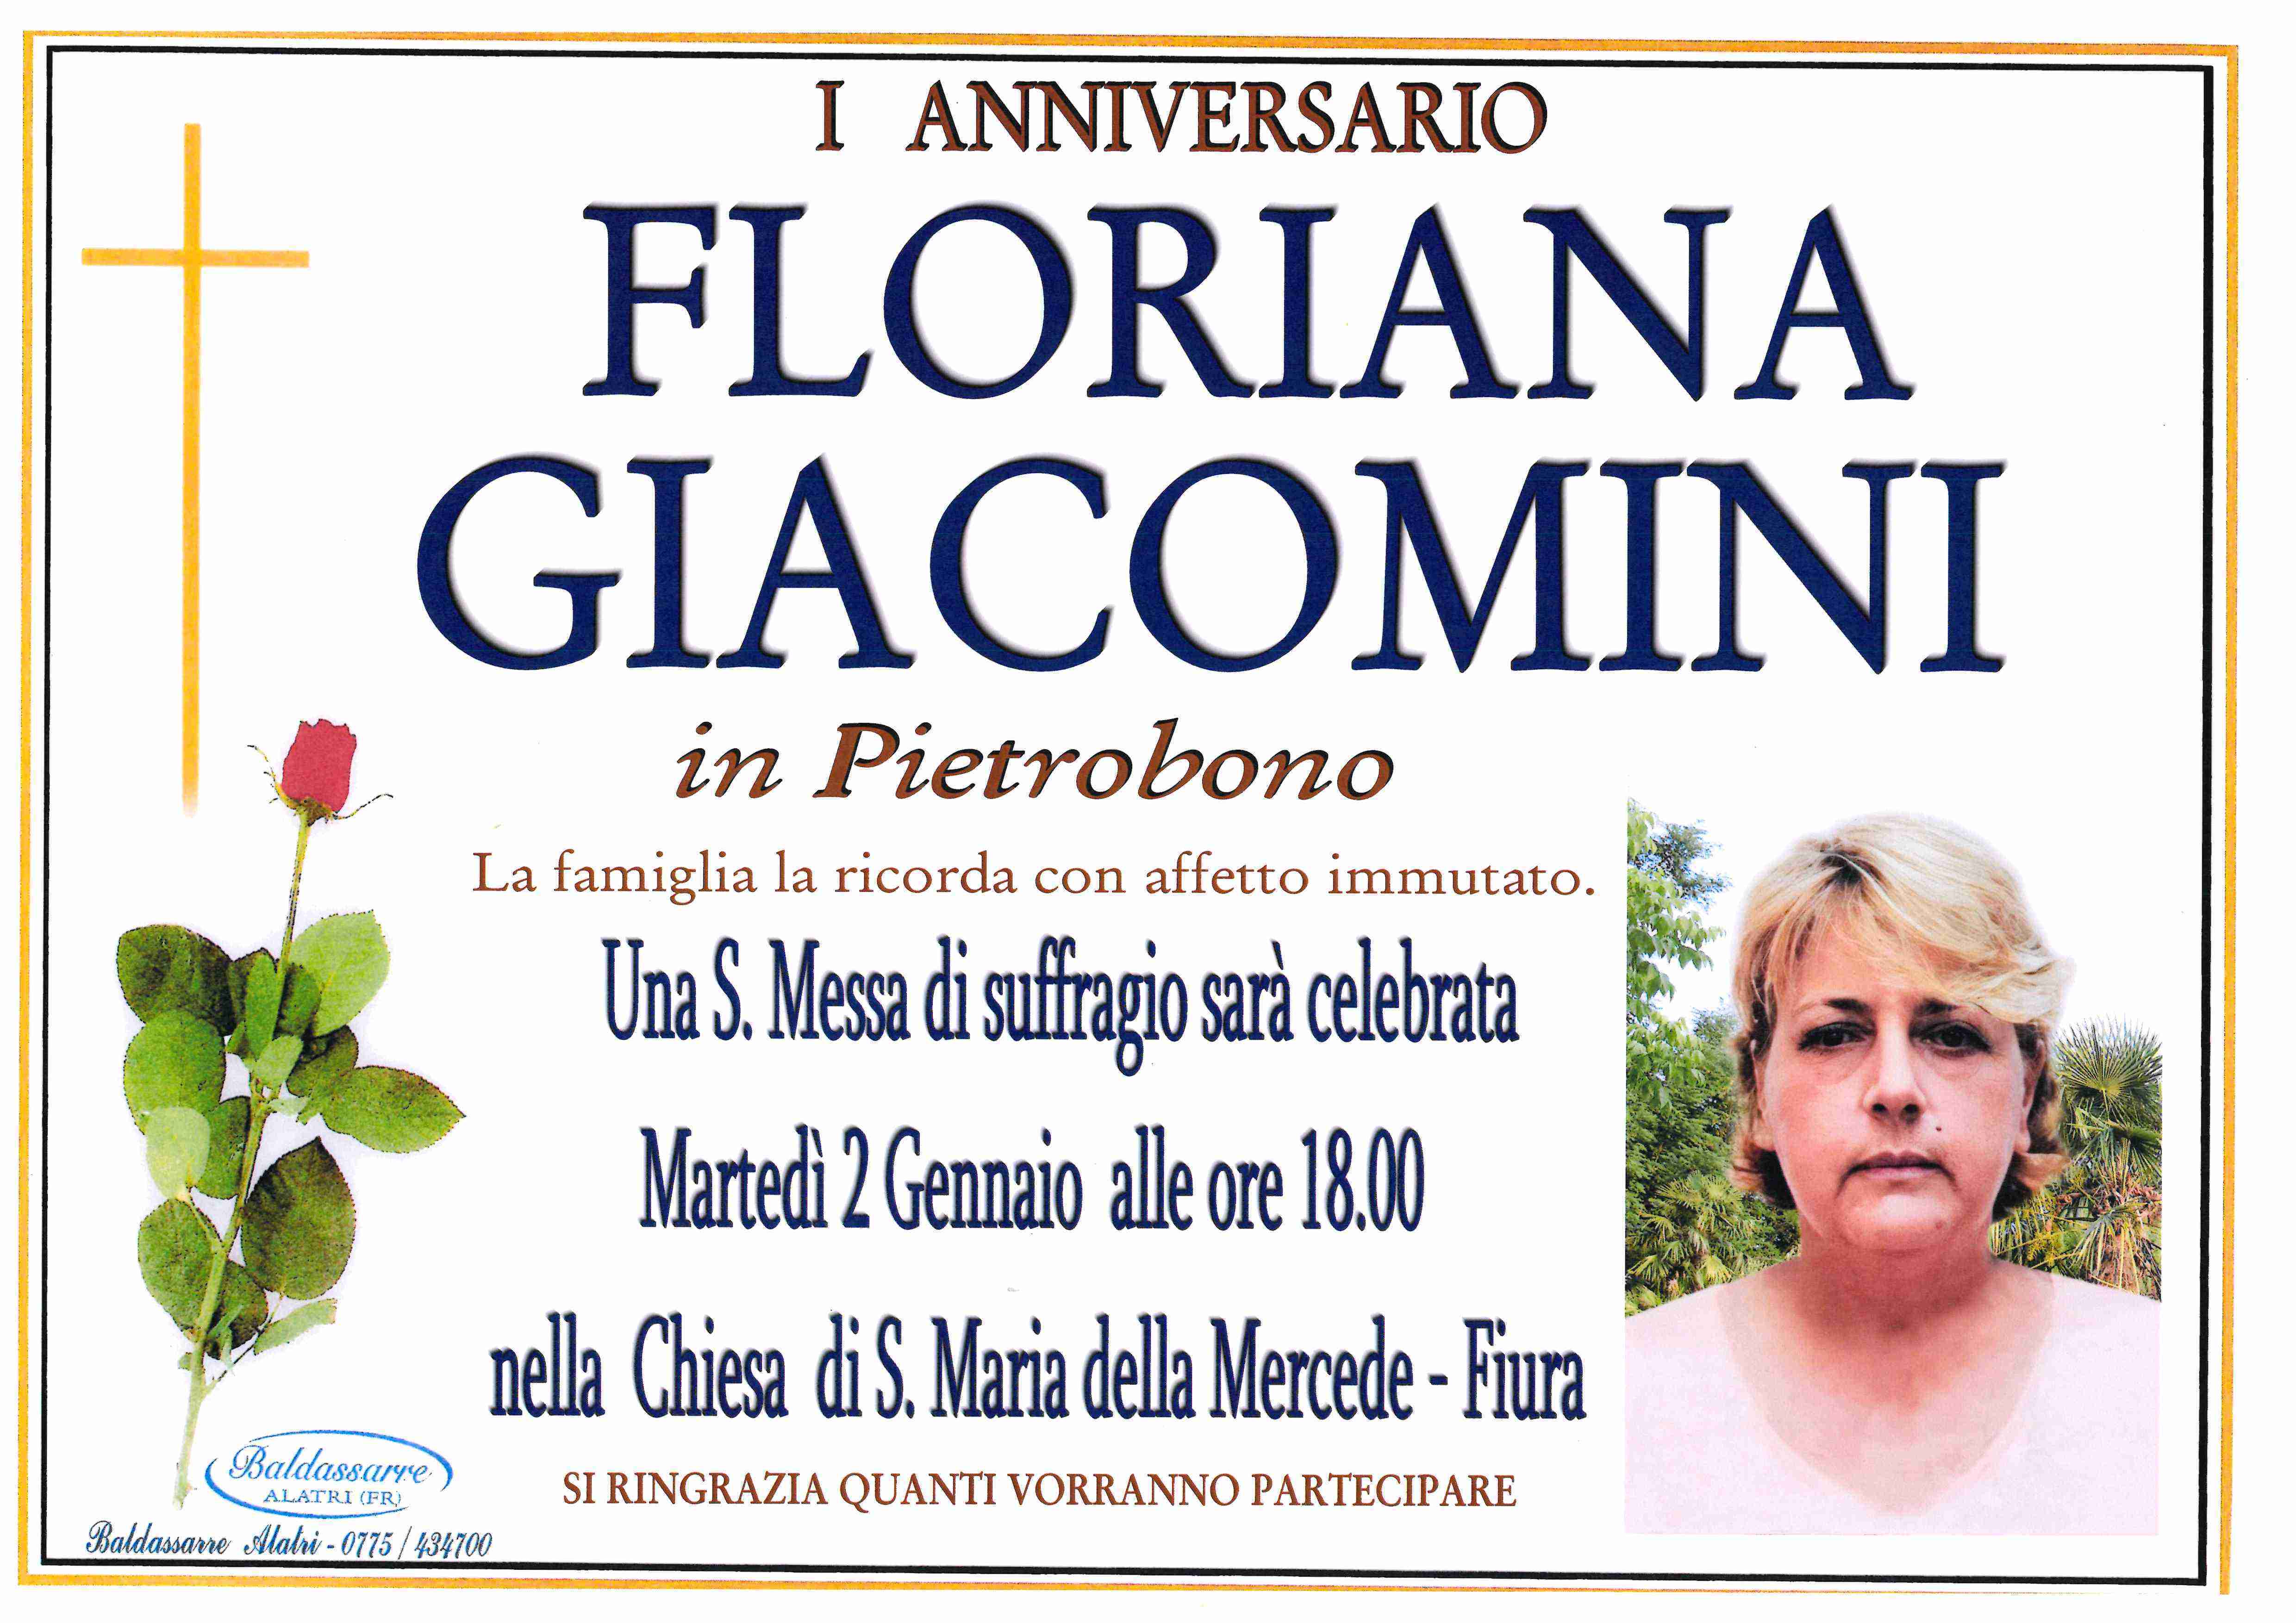 Giacomini Floriana